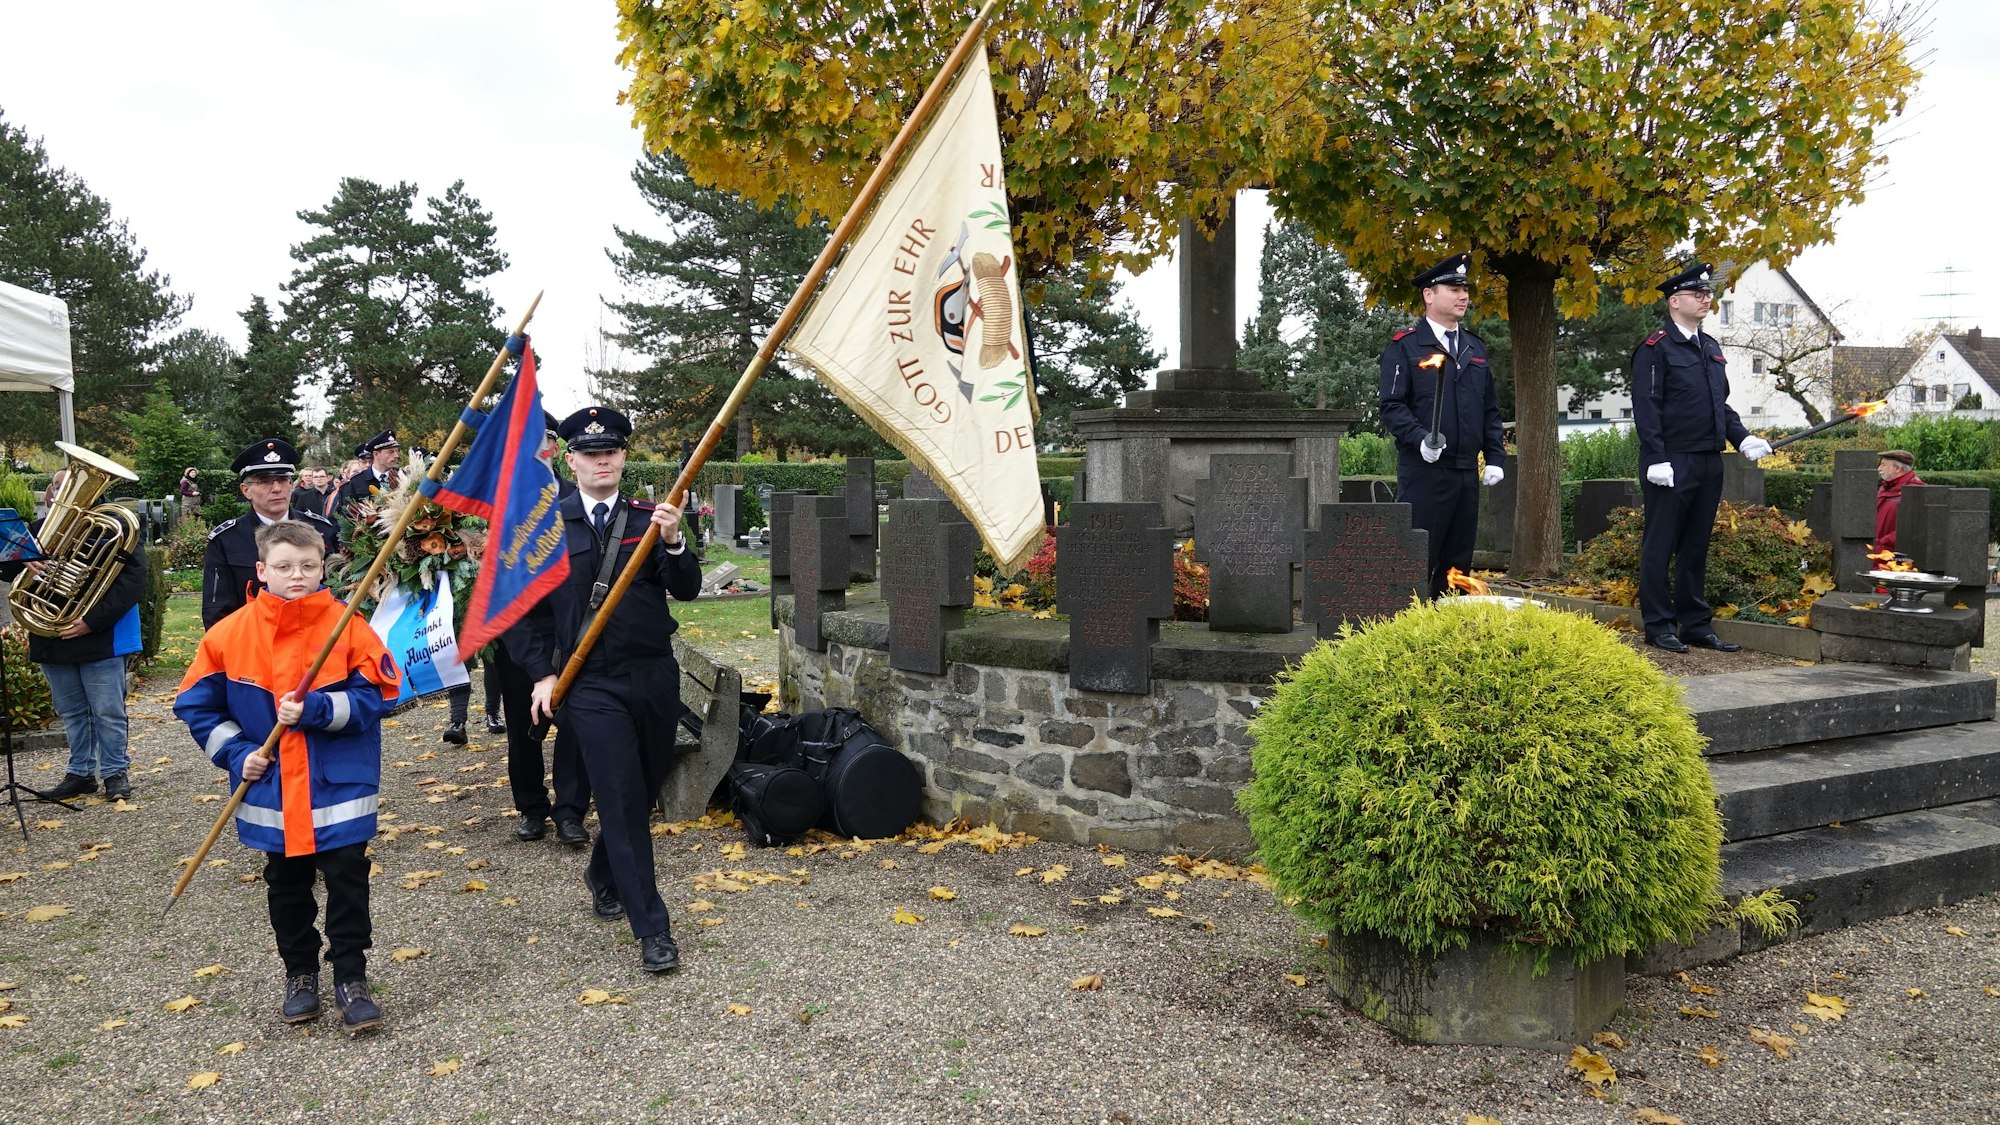 Die Freiwillige Feuerwehr ging dem Friedenszug voran, der zum Ehrenmal auf dem Friedhof an der Bonner Straße zog.